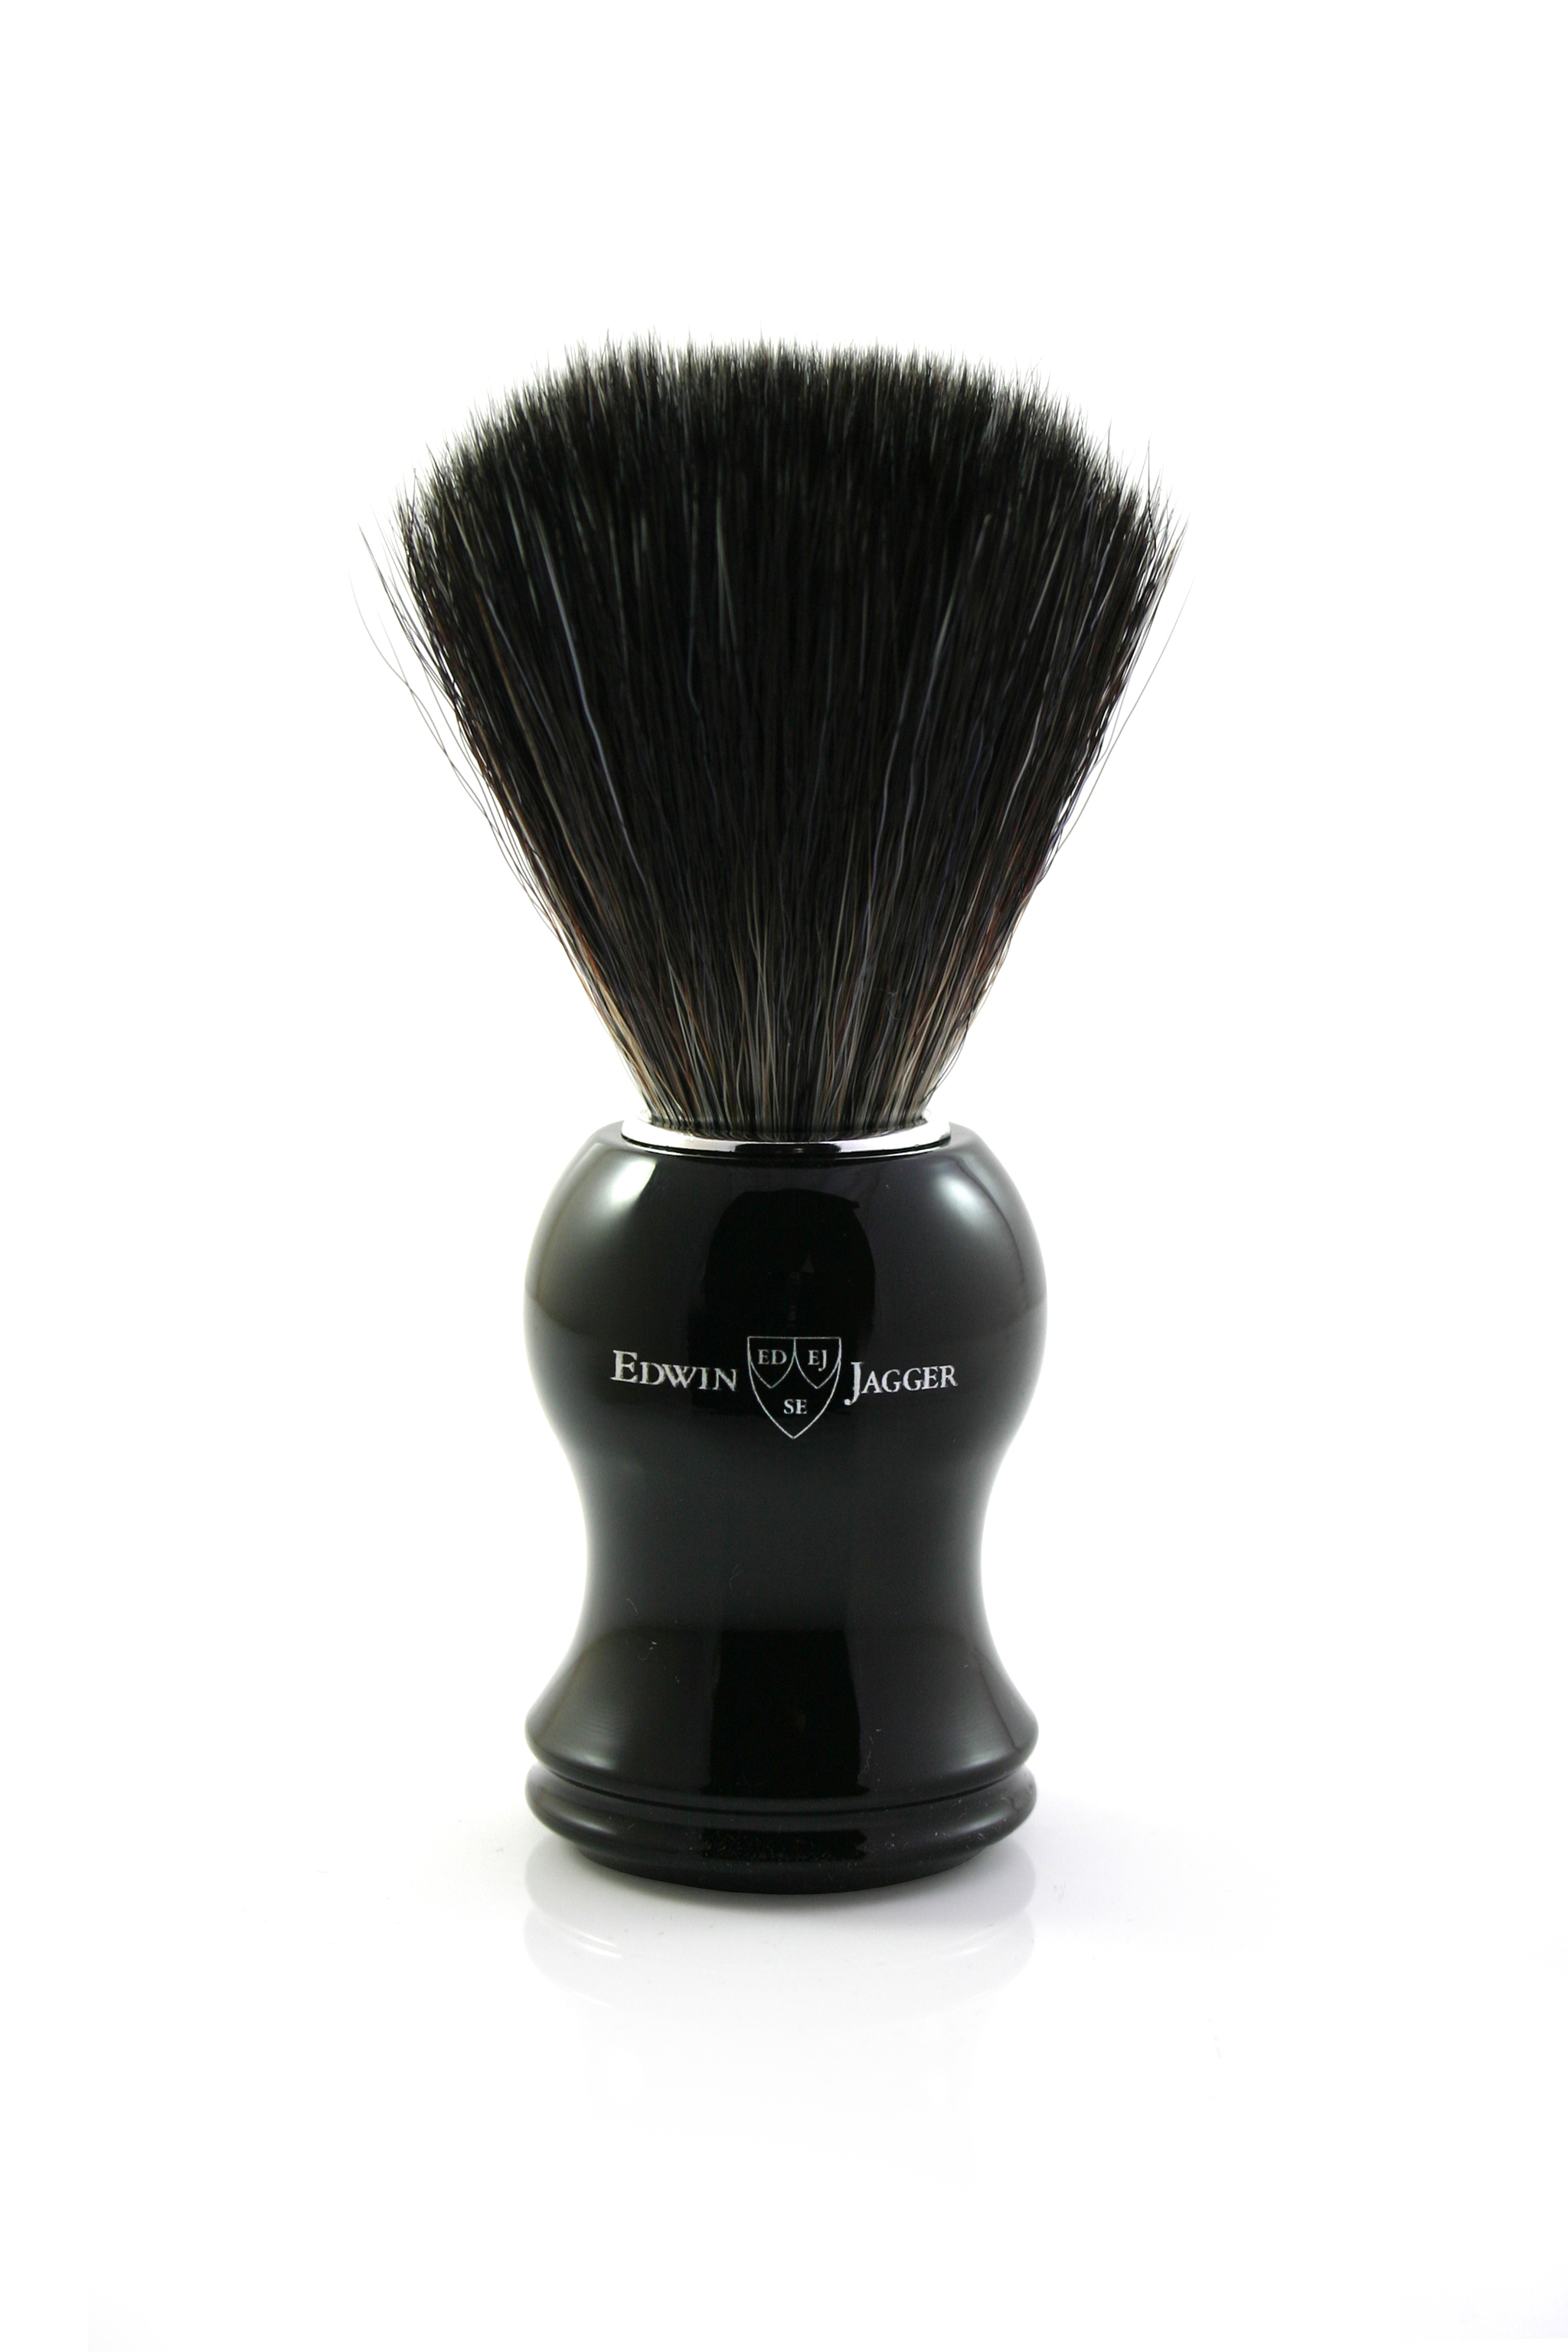 Edwin Jagger Black Shaving Brush | Agent Shave